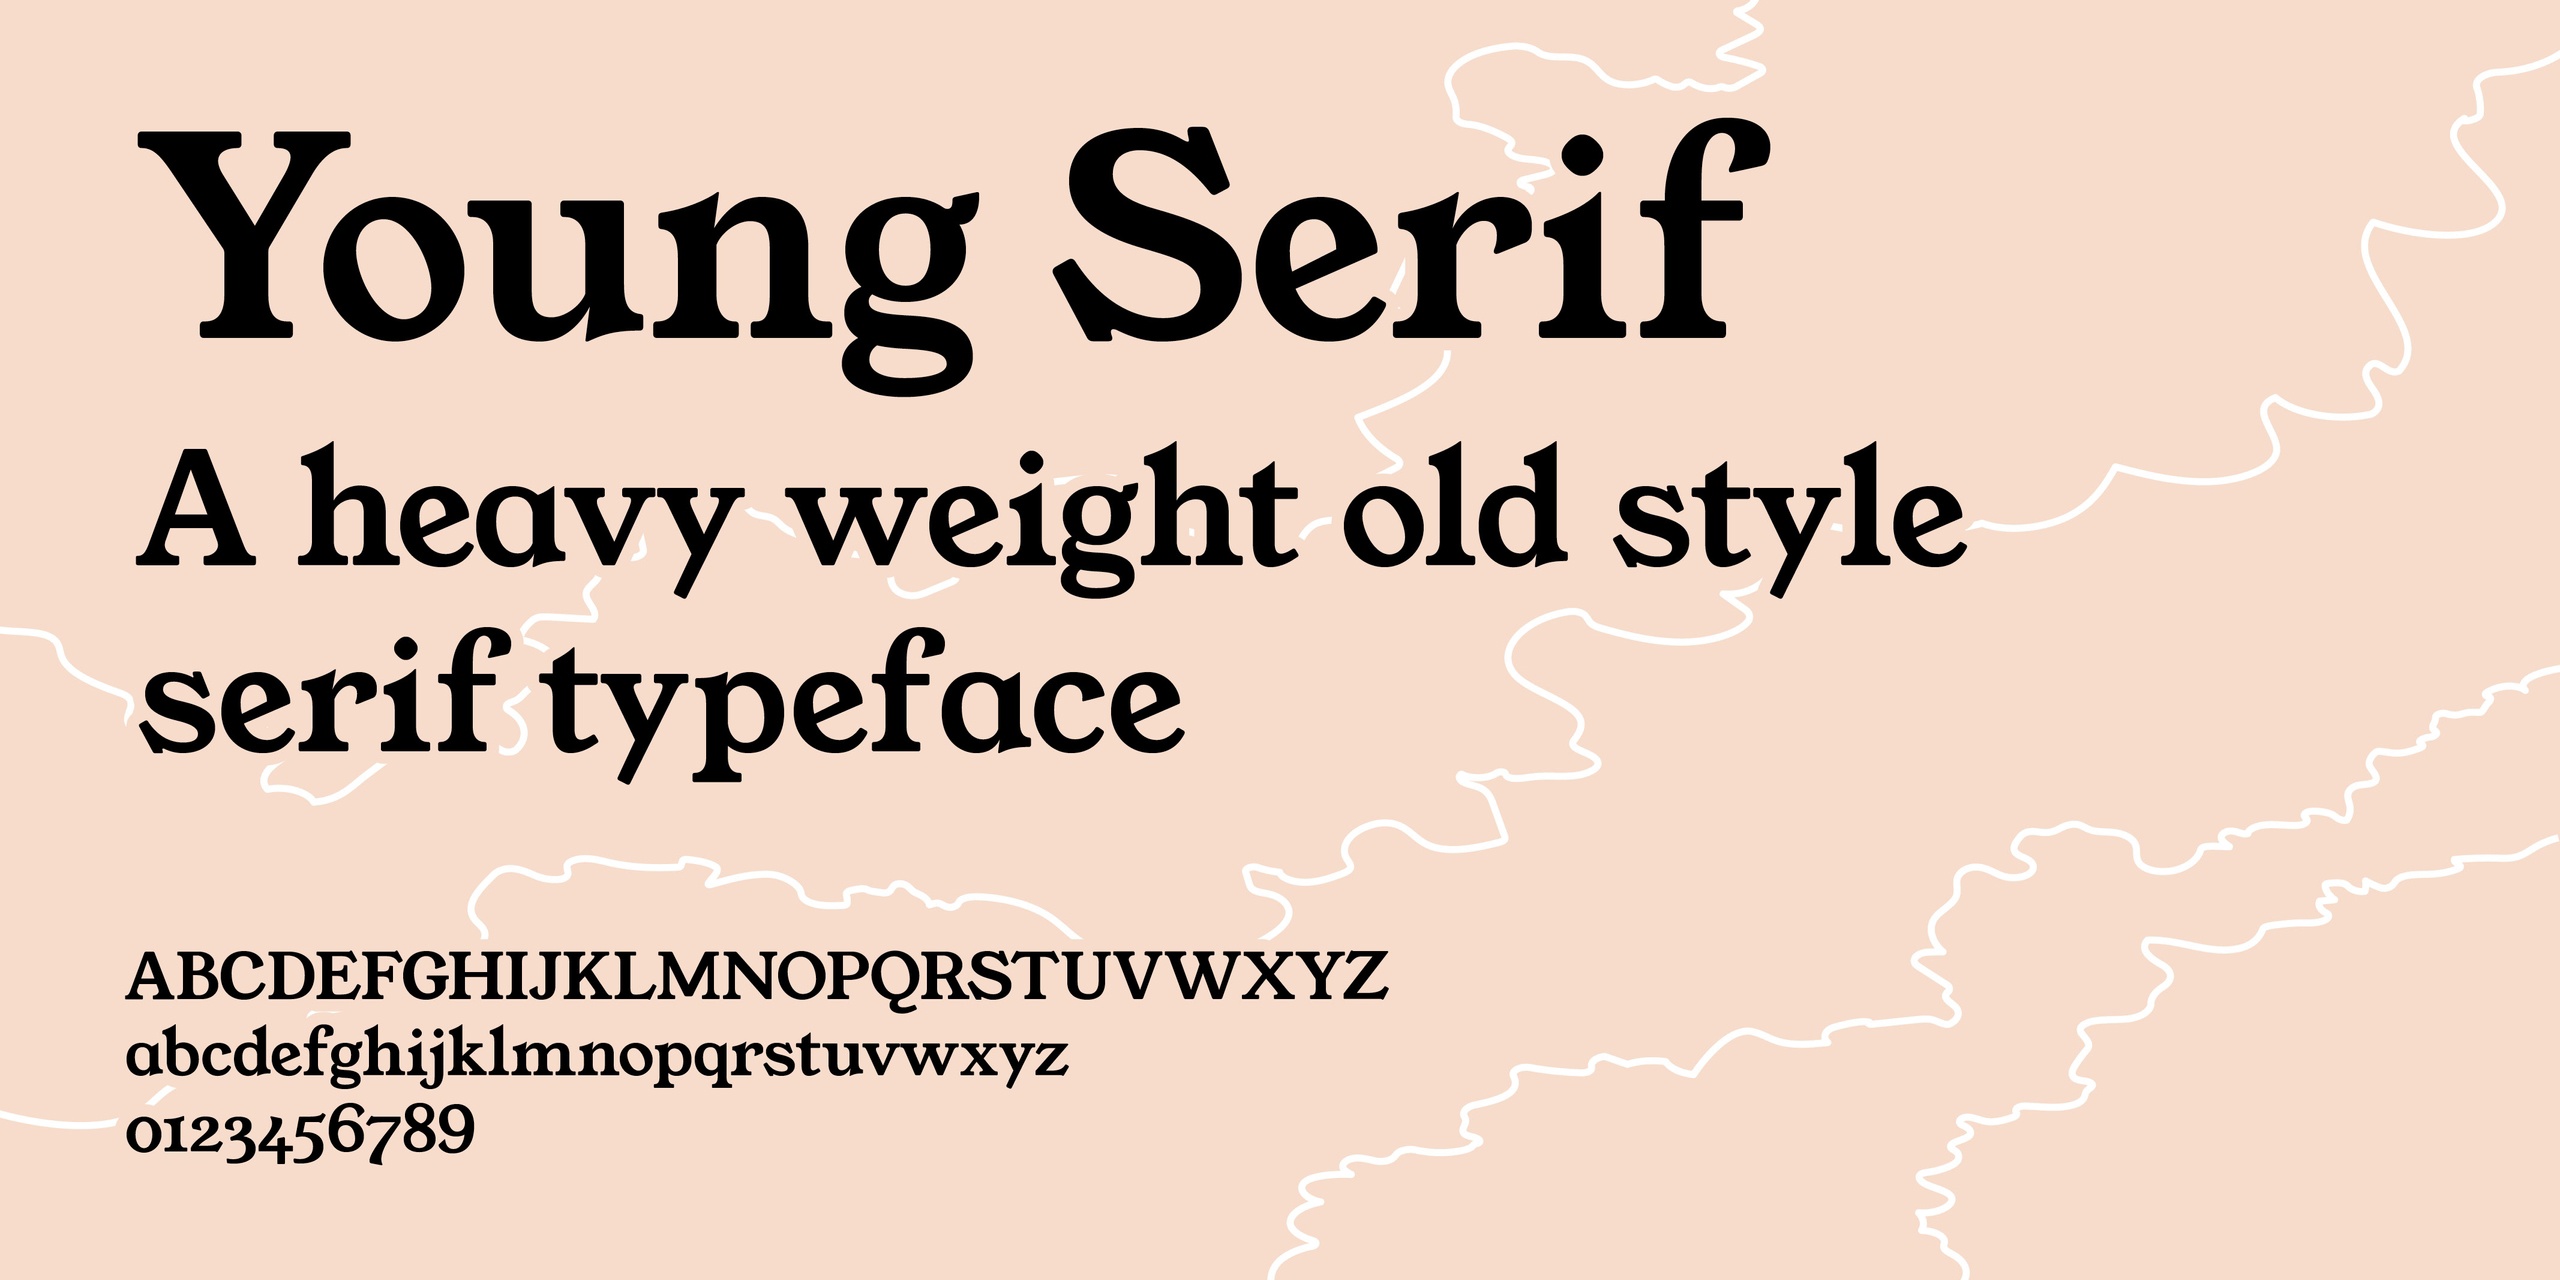 Beispiel einer Young Serif-Schriftart